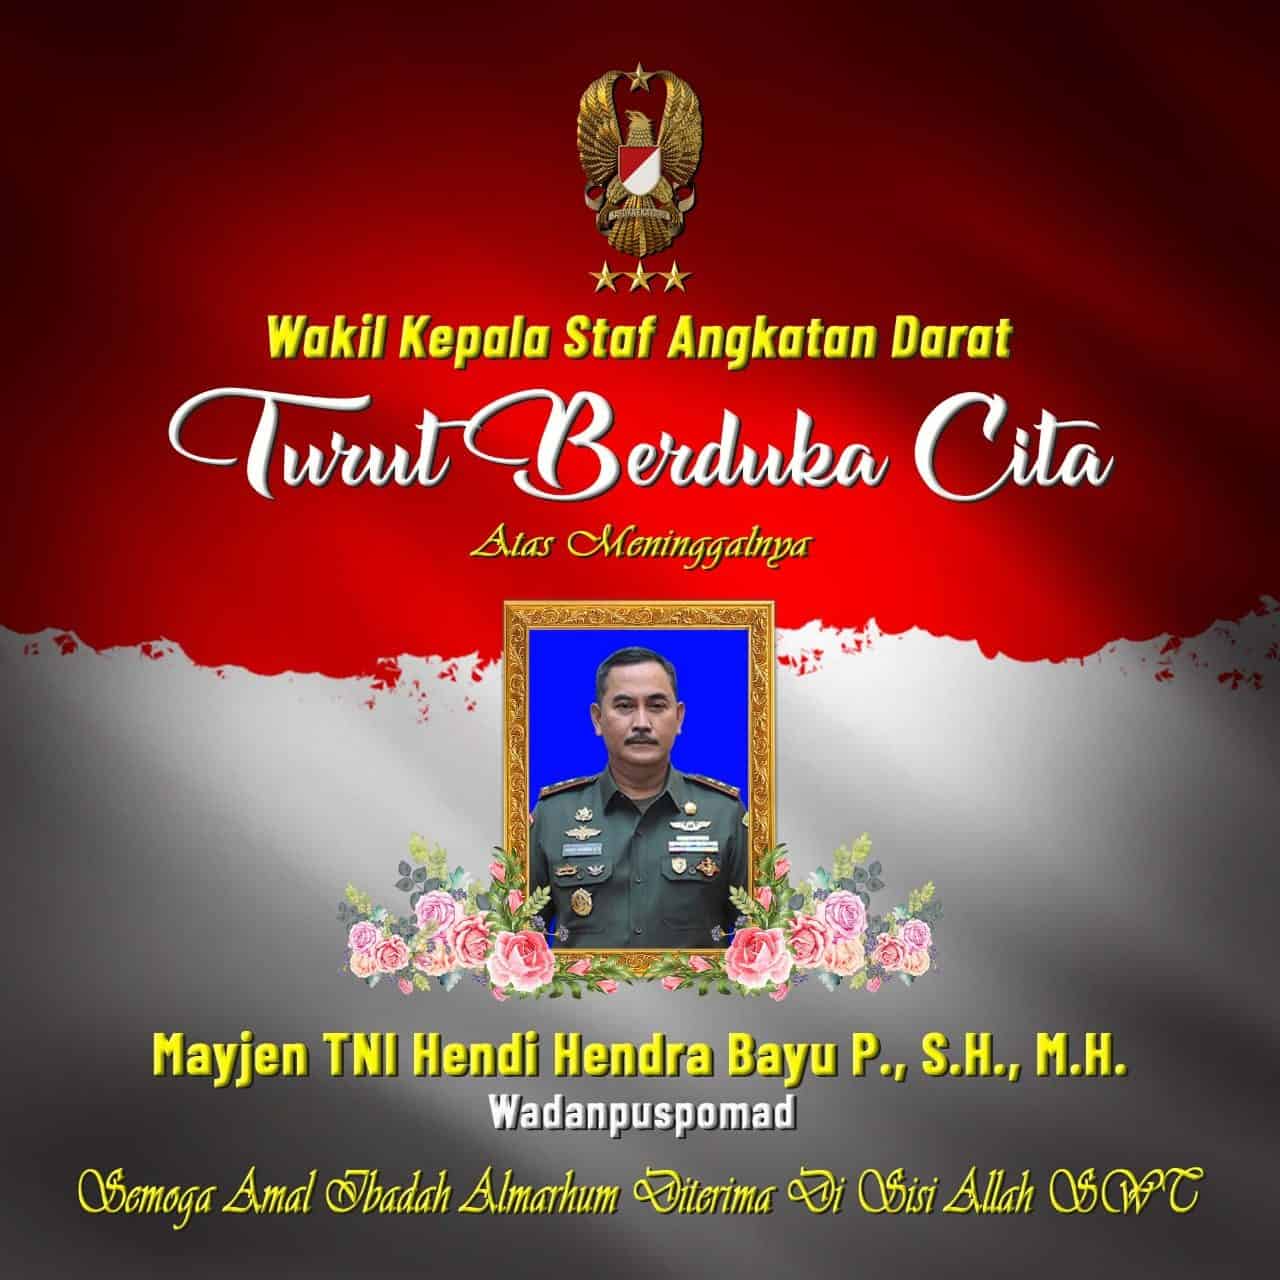 Wakil Kepala Staf Angkatan Darat, Turut Berduka Cita Atas Meninggalnya Wadanpuspomad Mayjen TNI Hendi Hendra Bayu P., S.H., M.H.